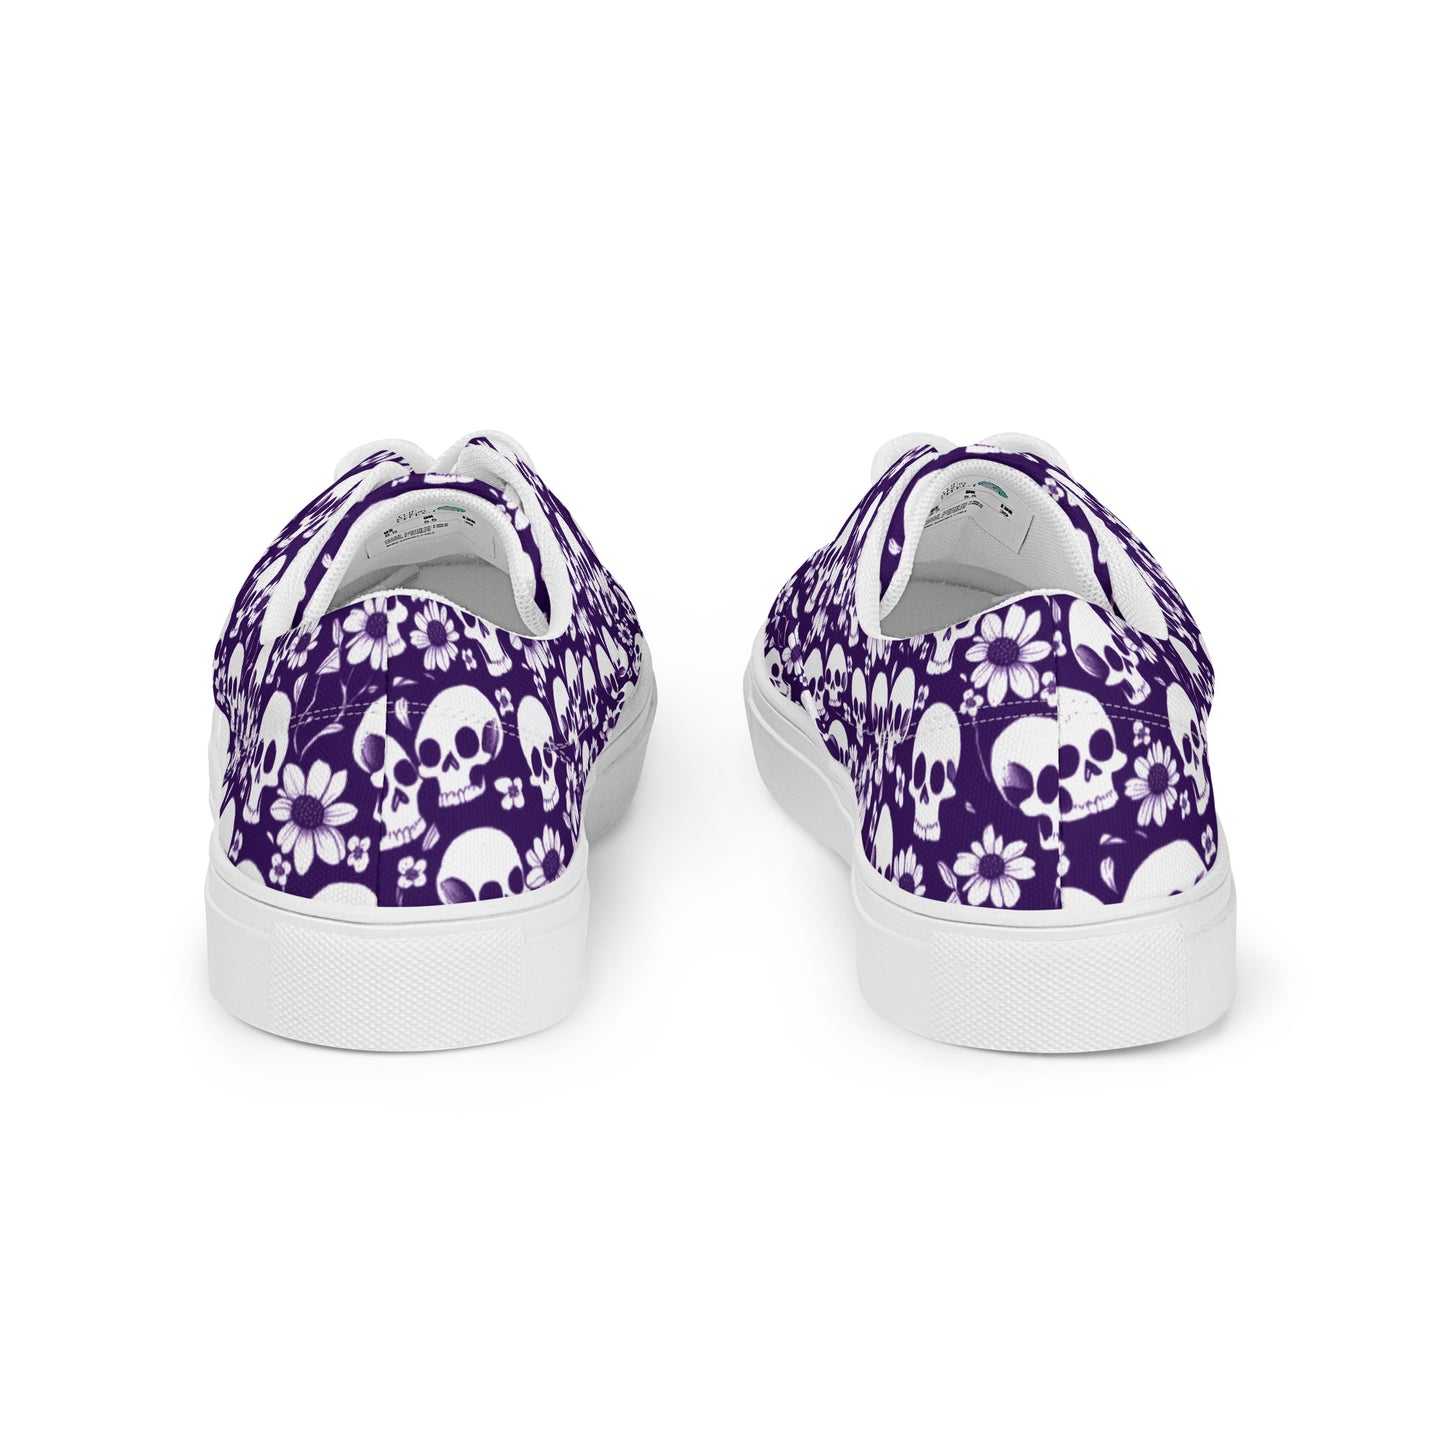 (US Sizes) Men’s Lace-Up Canvas Shoes - Memento Mori (Purple)